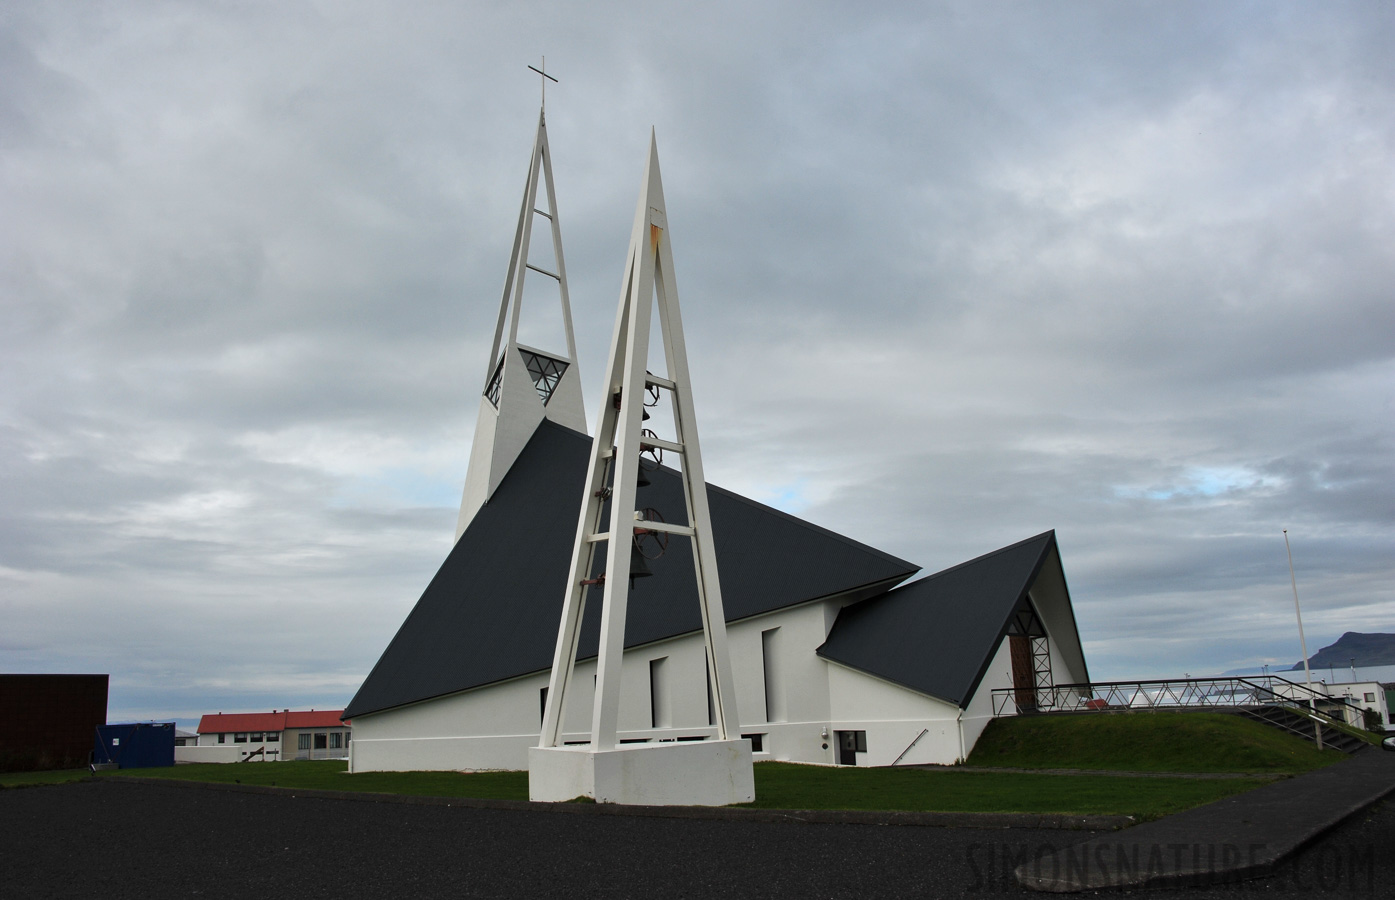 Moderne Kirche [28 mm, 1/640 Sek. bei f / 11, ISO 400]